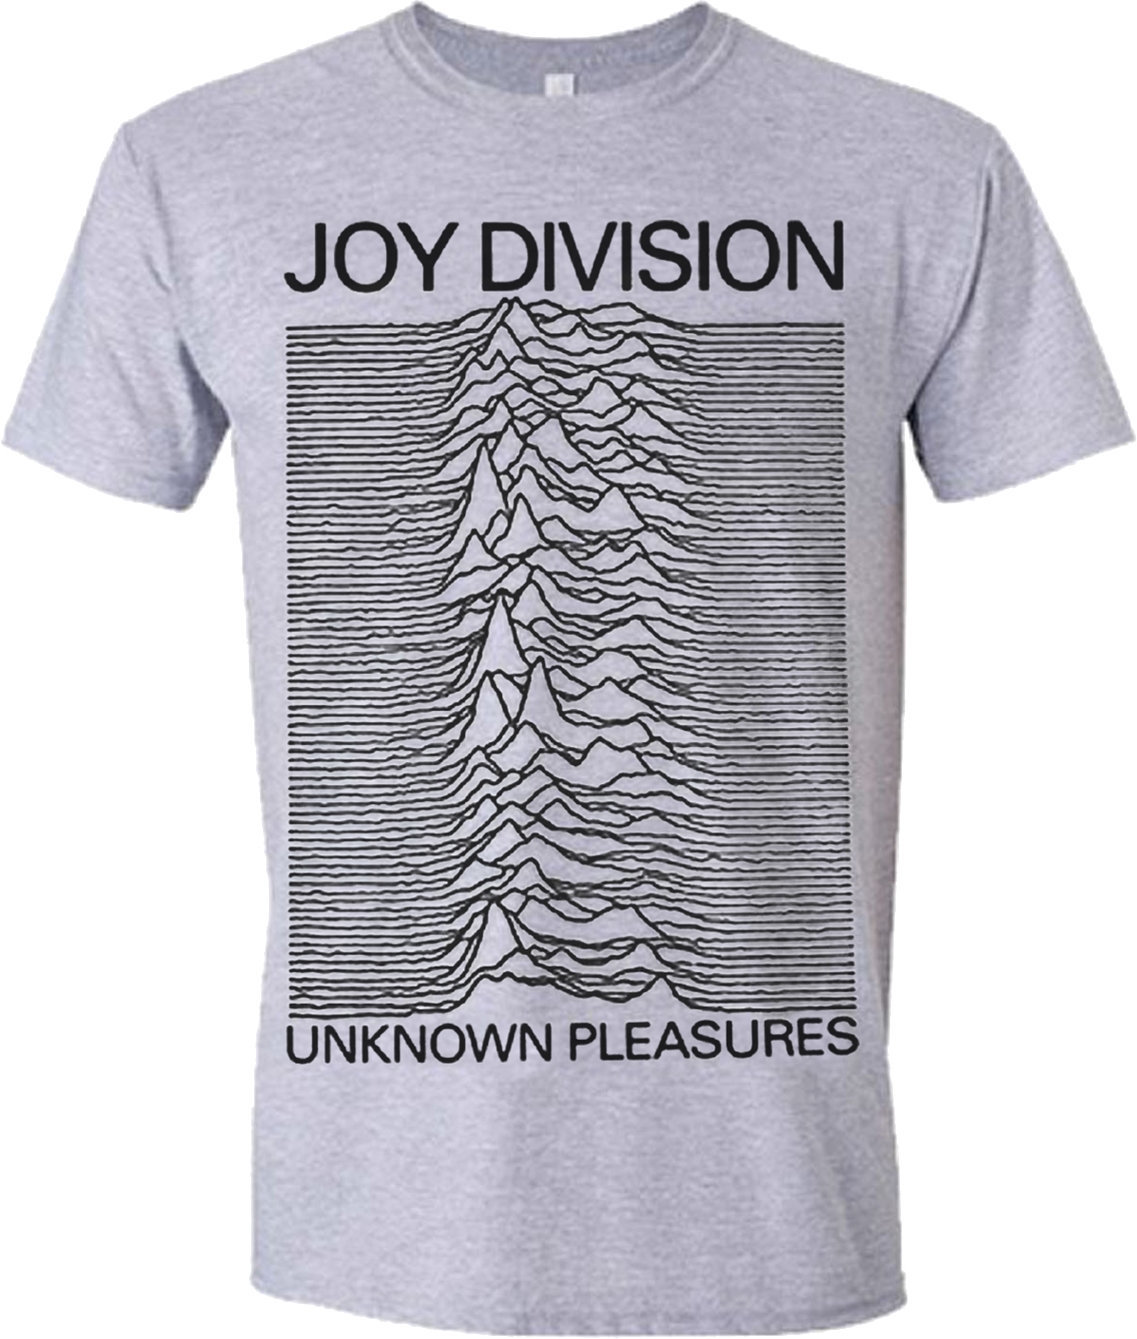 T-shirt Joy Division T-shirt Unknown Pleasures Homme Grey L